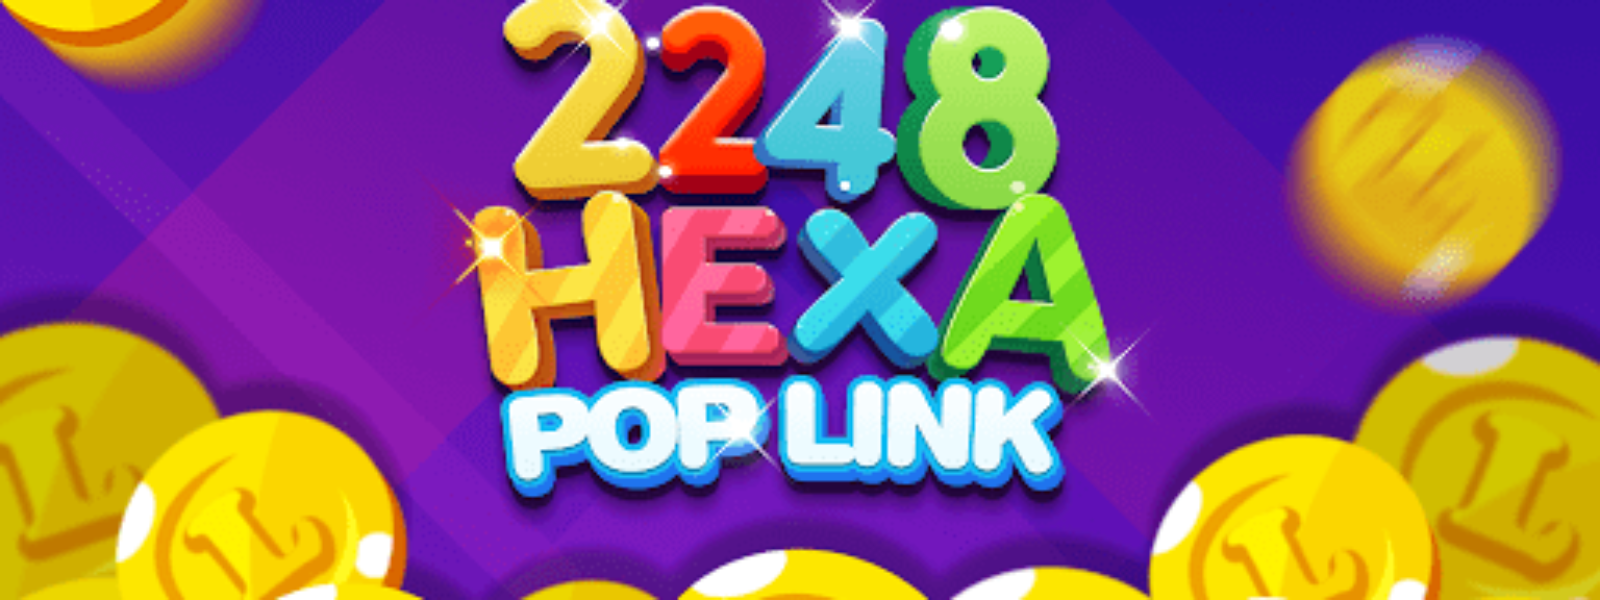 HexaPop Link 2248 pentru Android | iOS